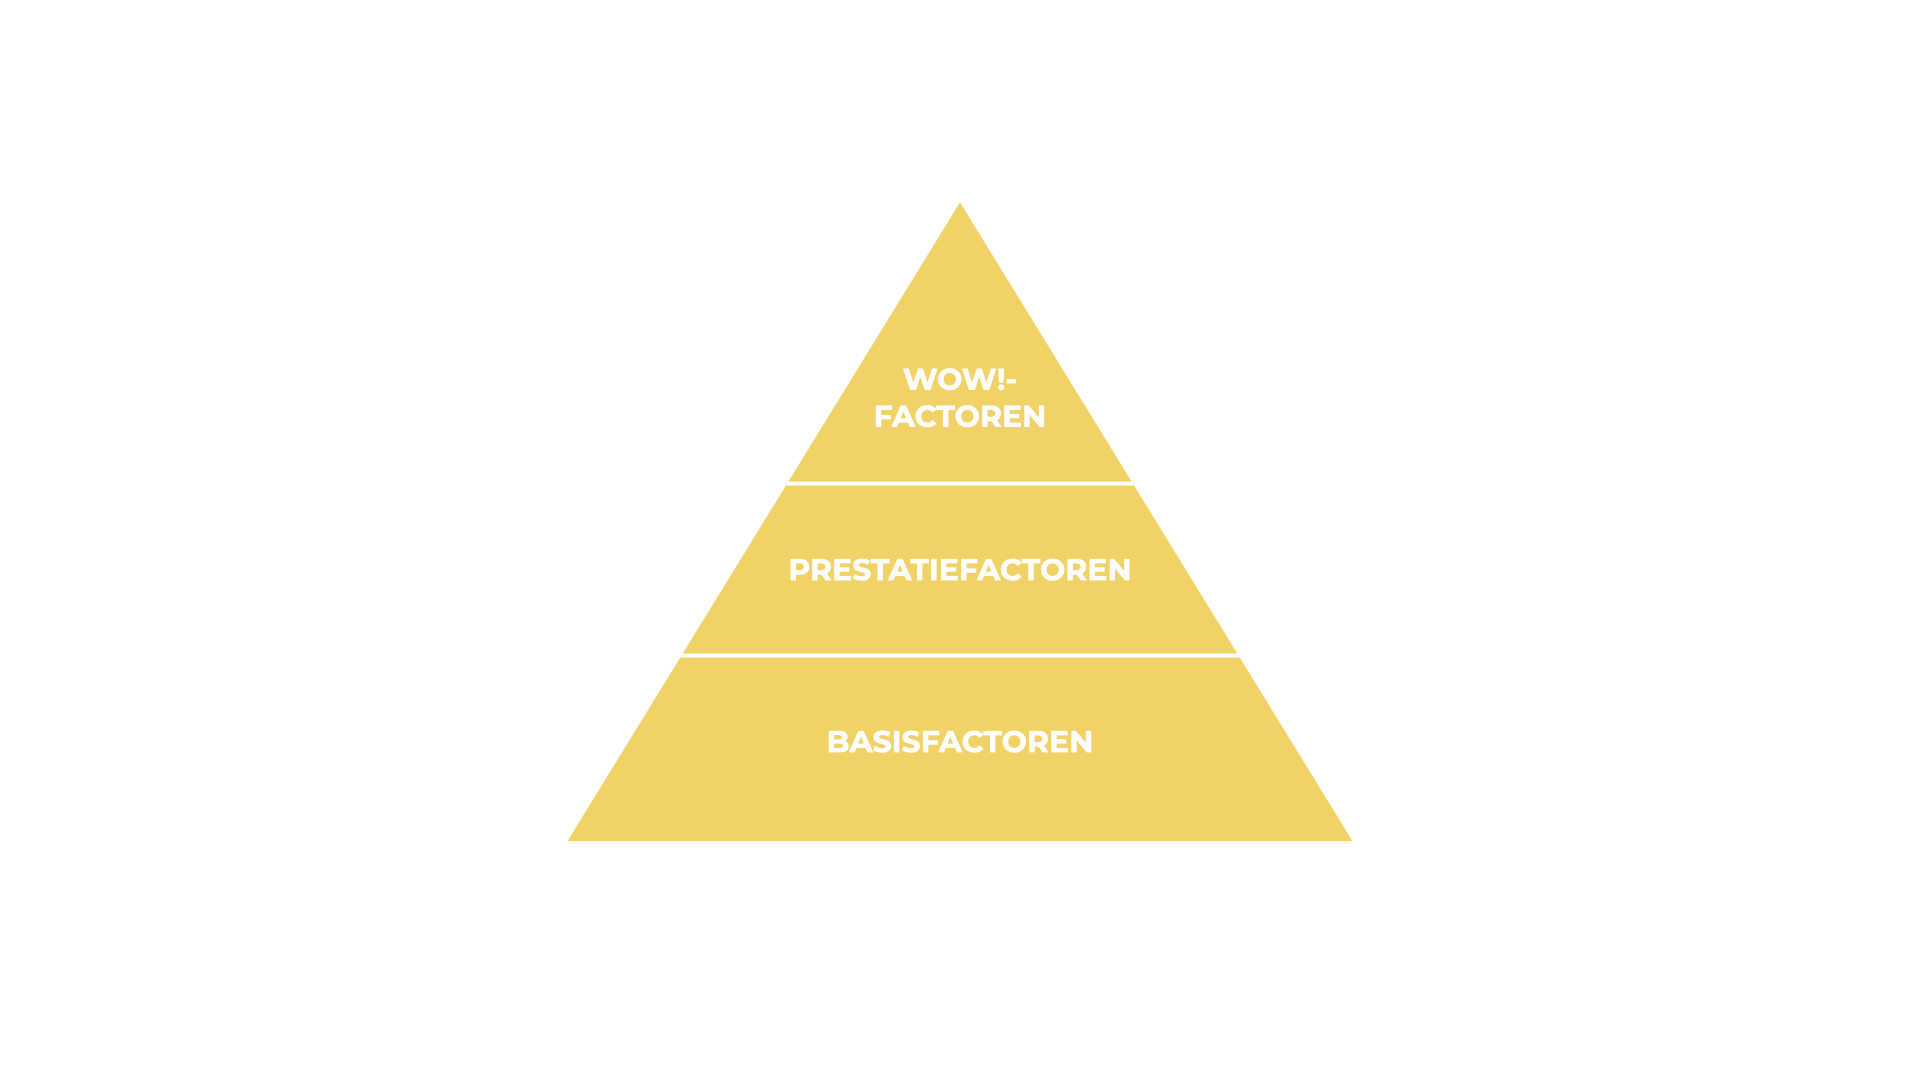 De factoren van het kano model in een piramide